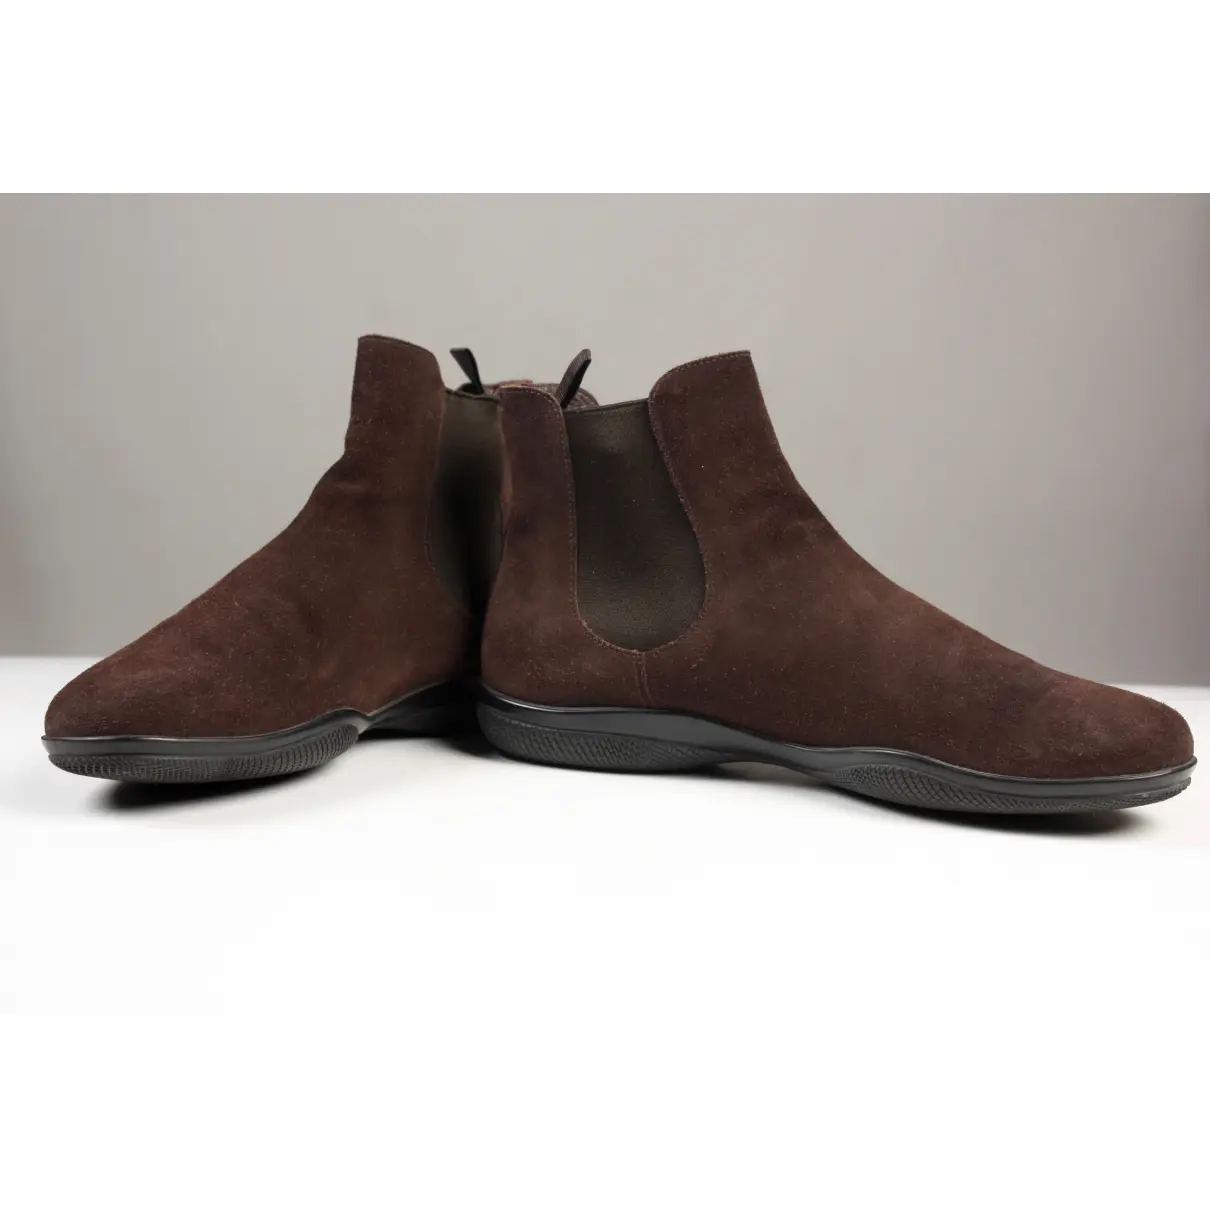 Buy Prada Brown Suede Boots online